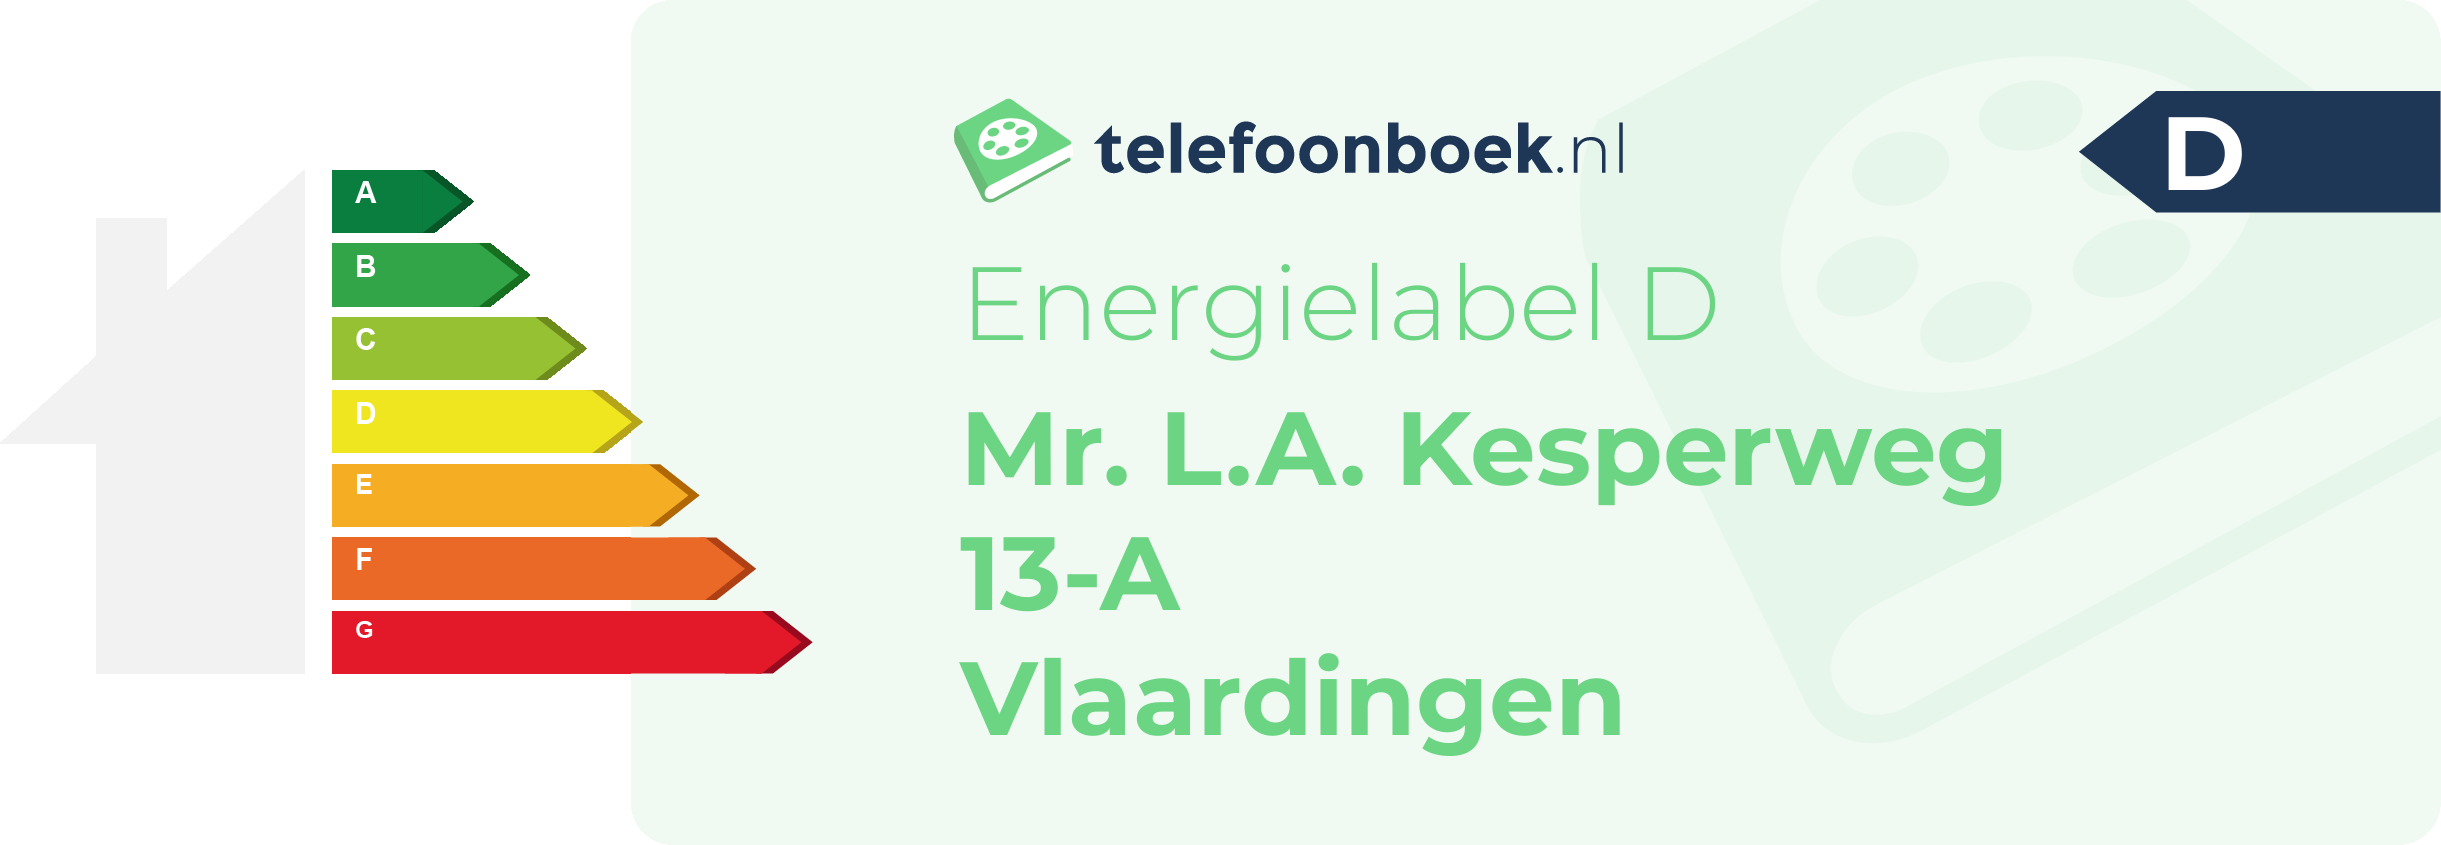 Energielabel Mr. L.A. Kesperweg 13-A Vlaardingen